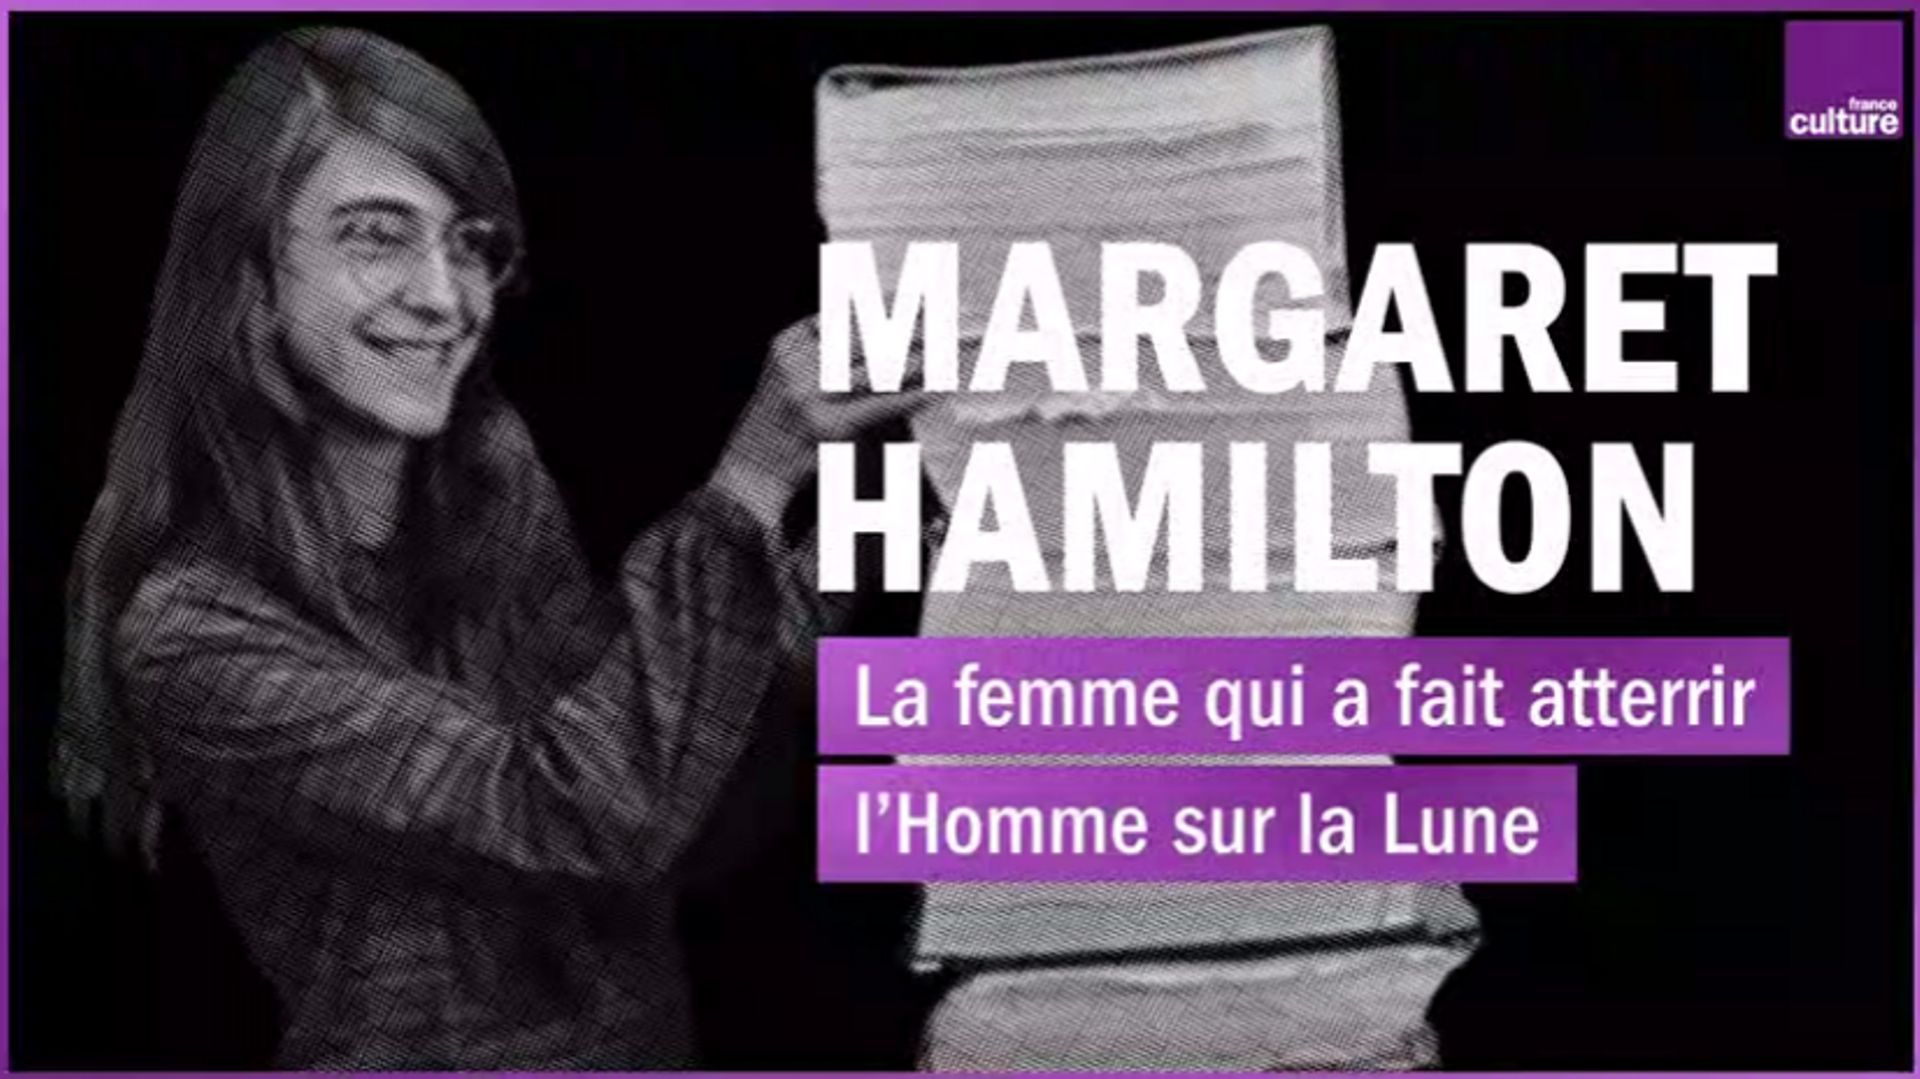 Margaret Hamilton, "la femme qui a fait atterrir l'Homme sur la Lune". 